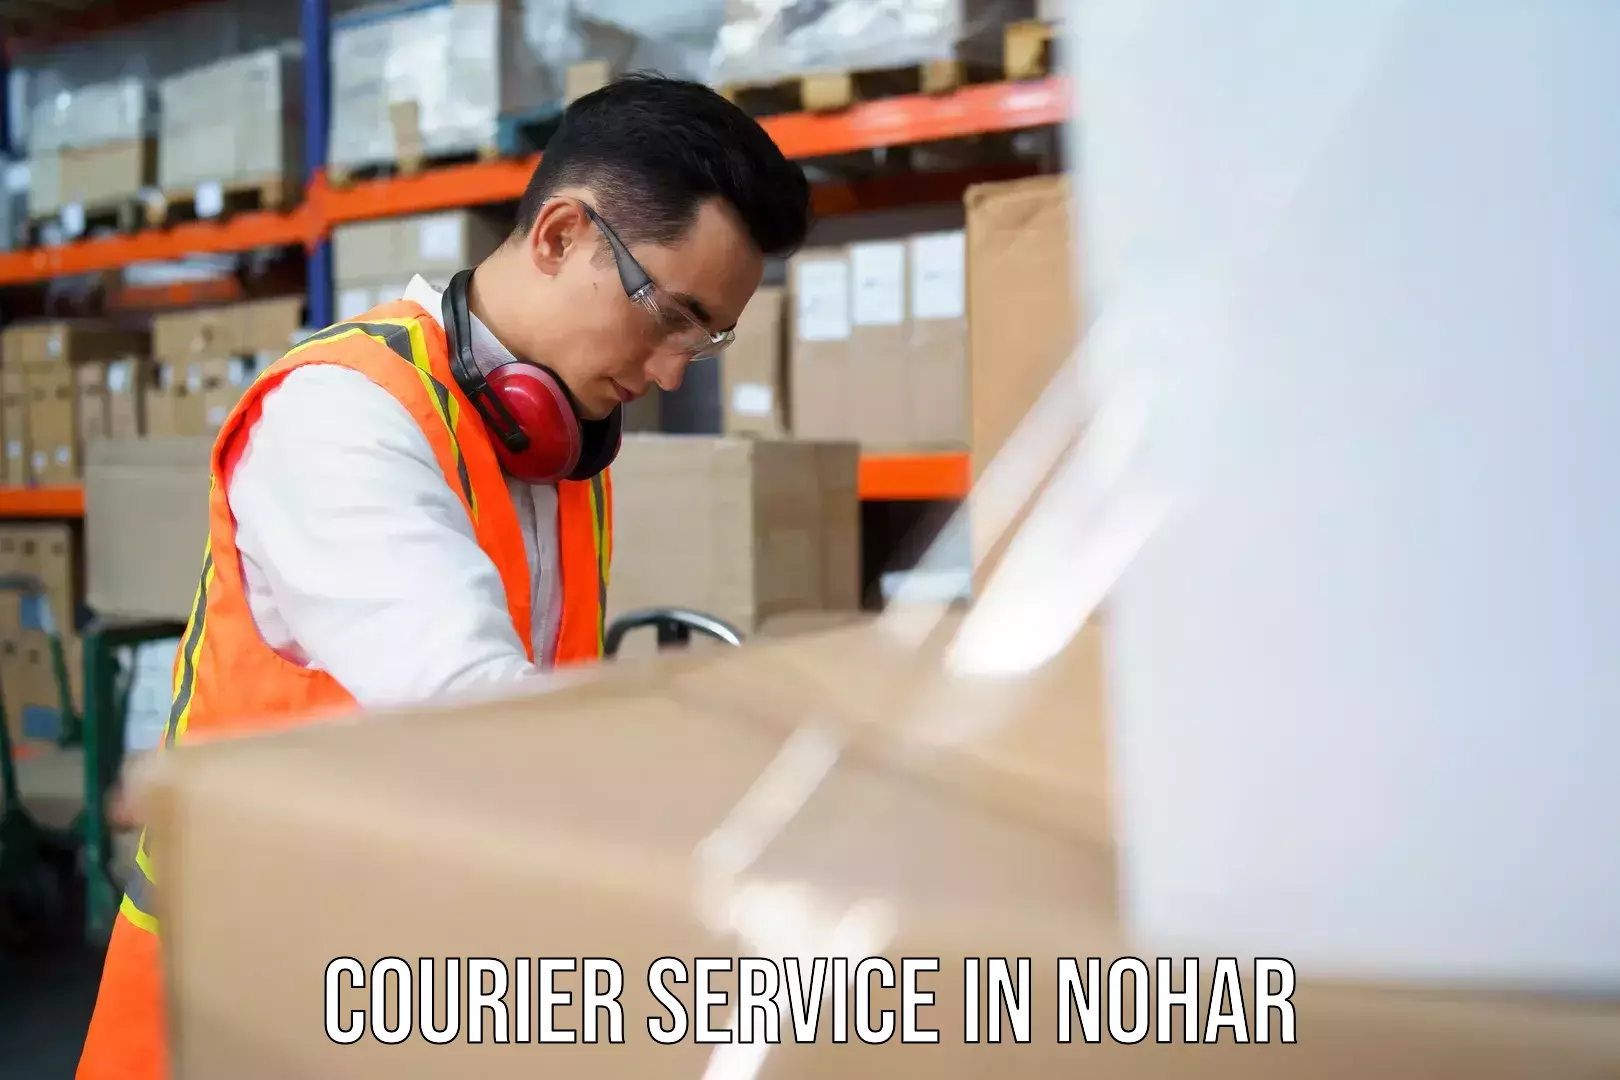 Logistics management in Nohar